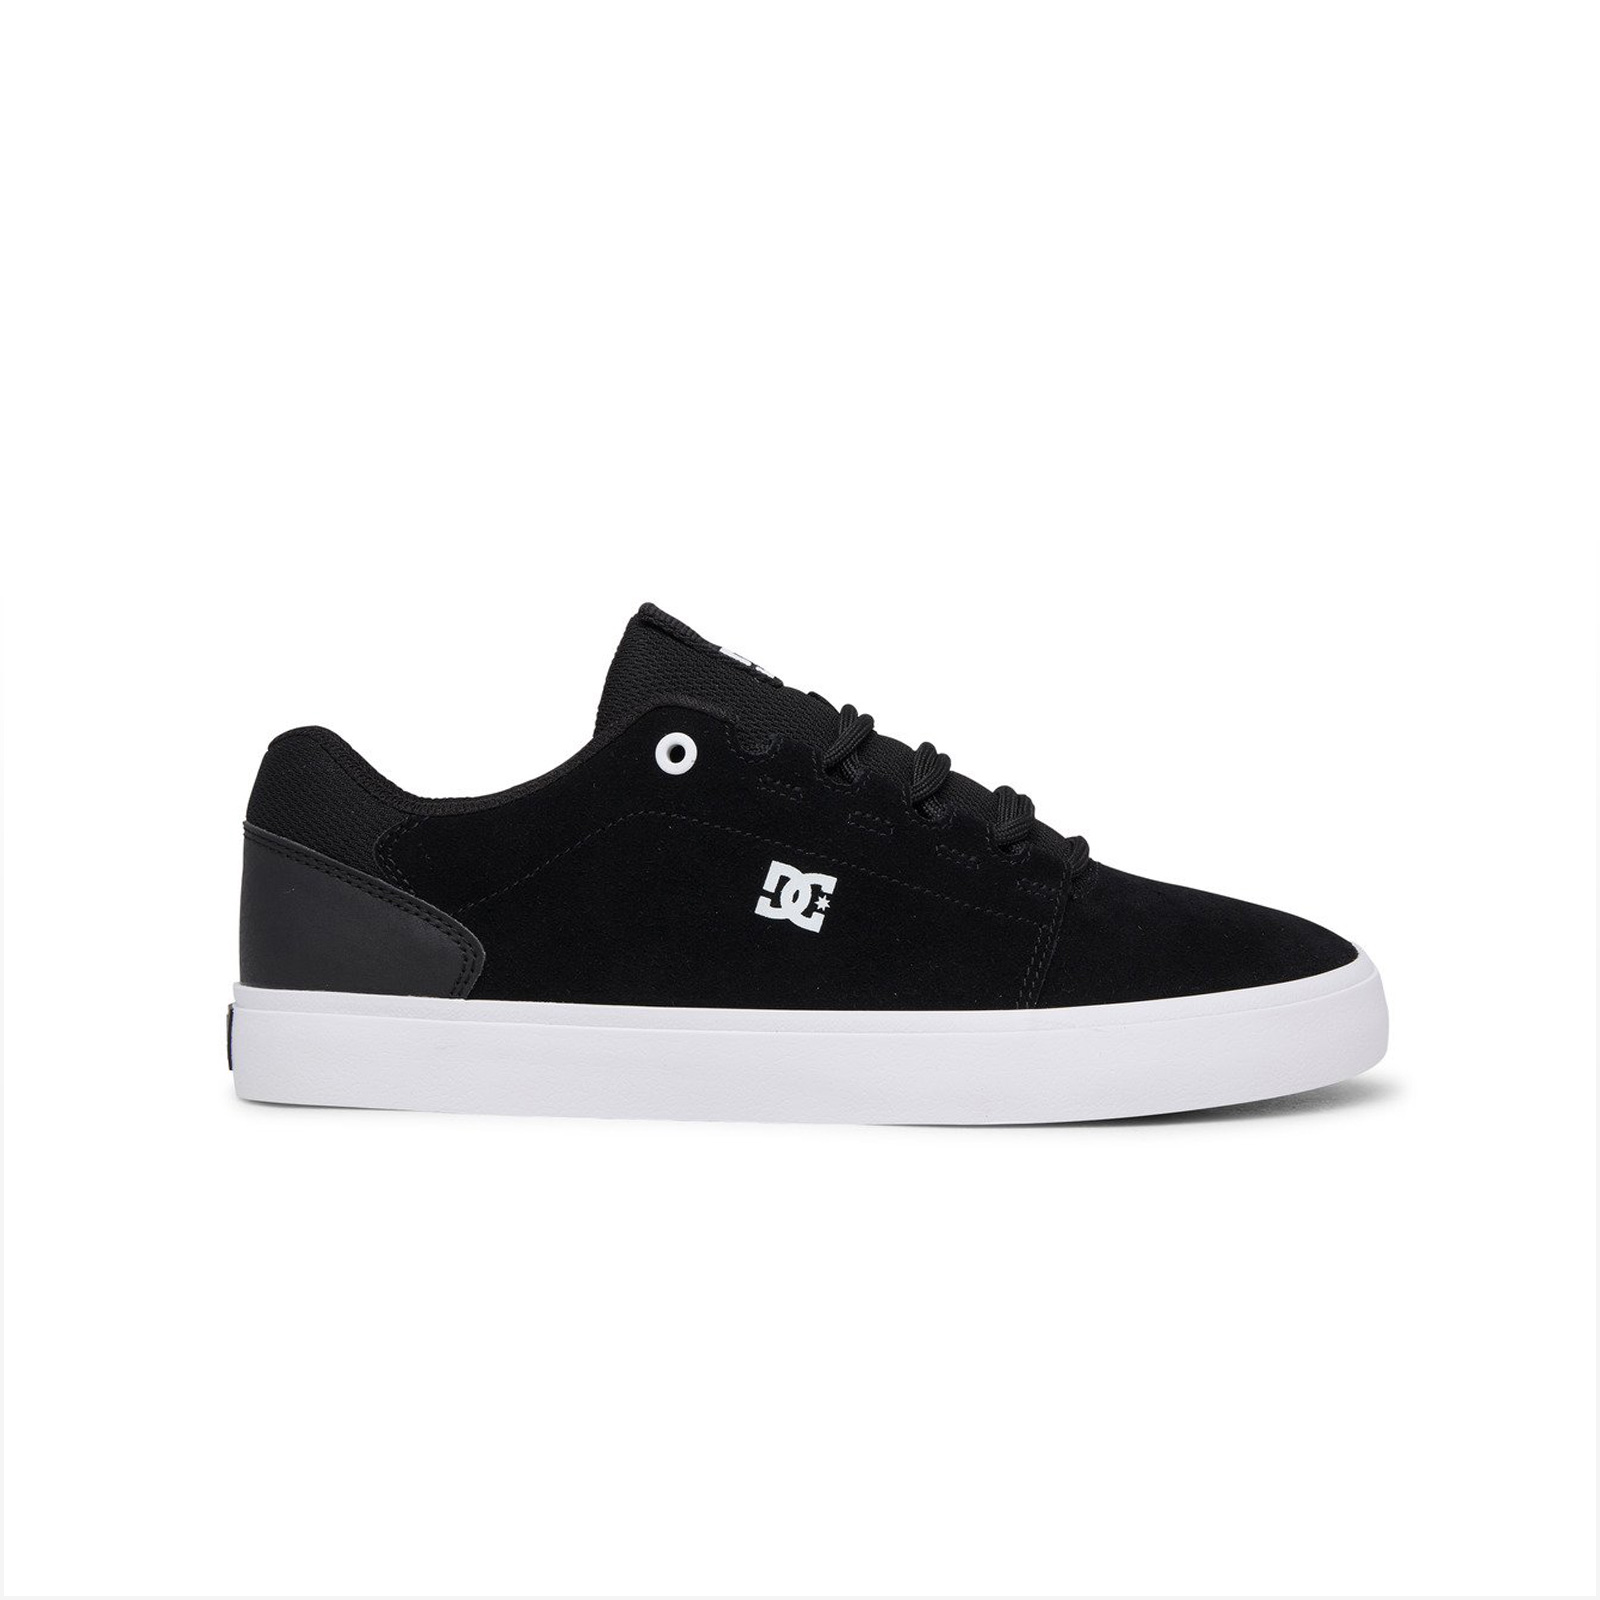 Dc - HYDE - BLACK/BLACK/WHITE Ανδρικά > Παπούτσια > Sneaker > Παπούτσι Low Cut